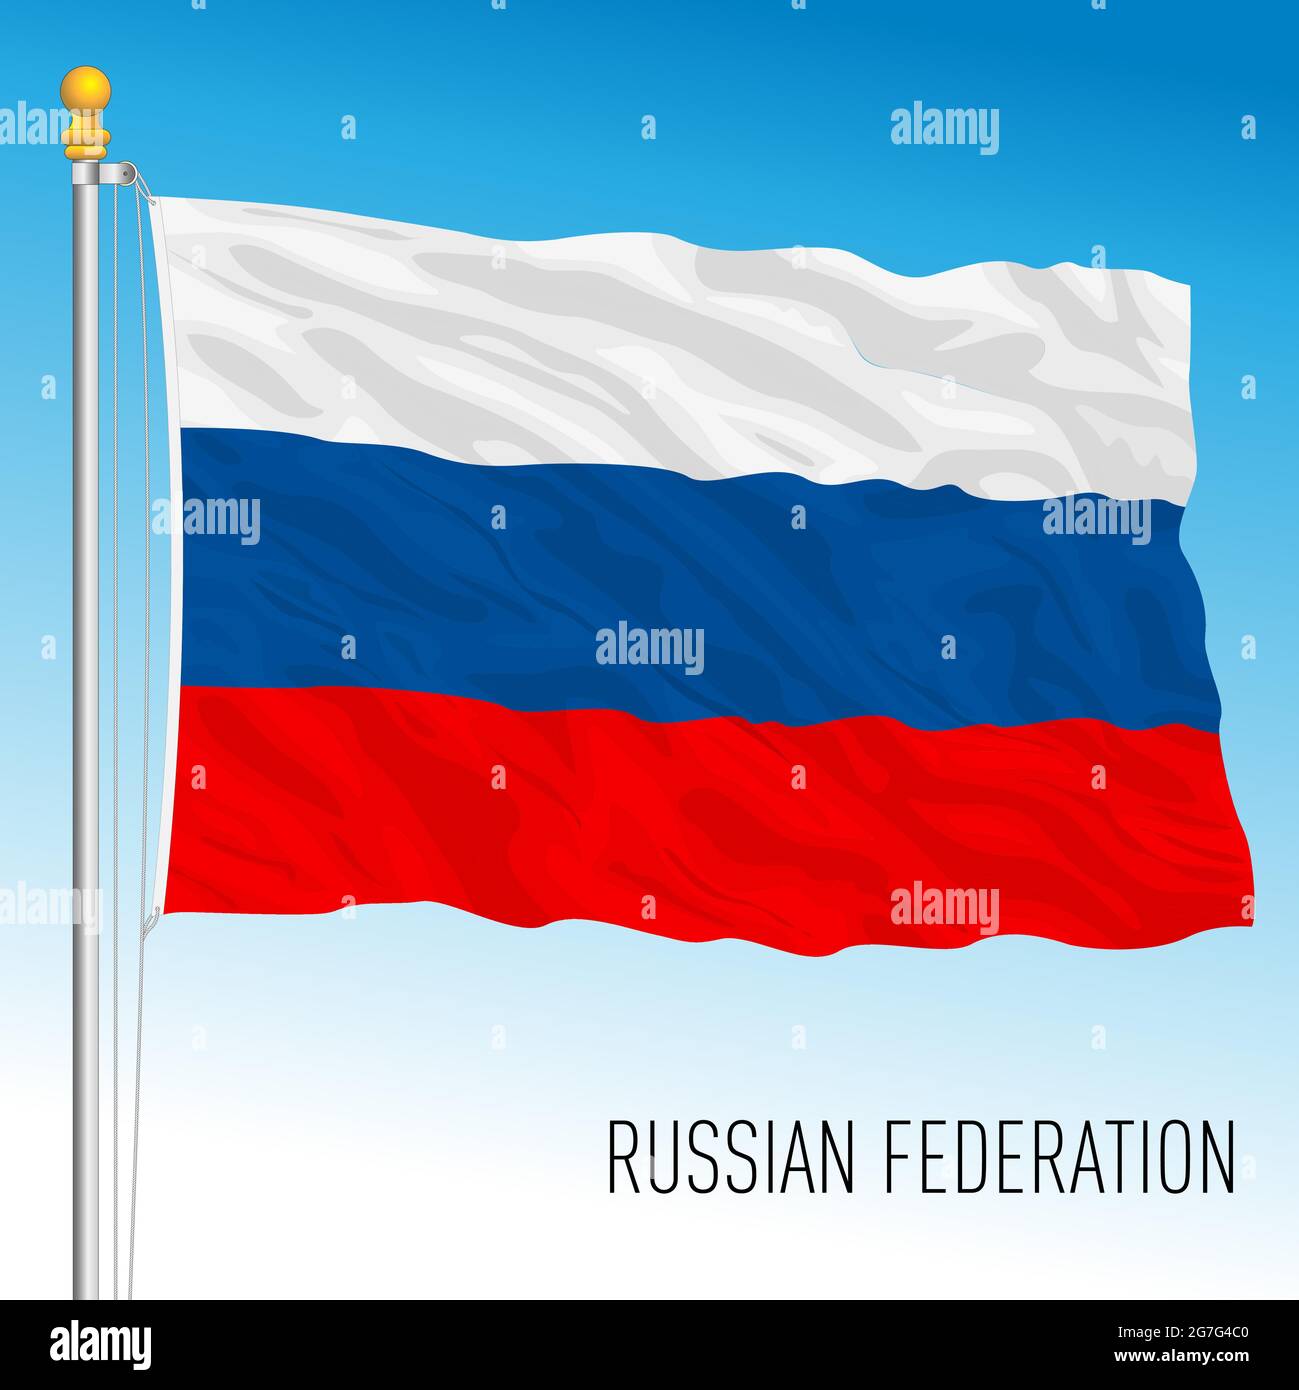 Russia bandiera nazionale ufficiale della Federazione, paese asiatico ed europeo, illustrazione vettoriale Illustrazione Vettoriale